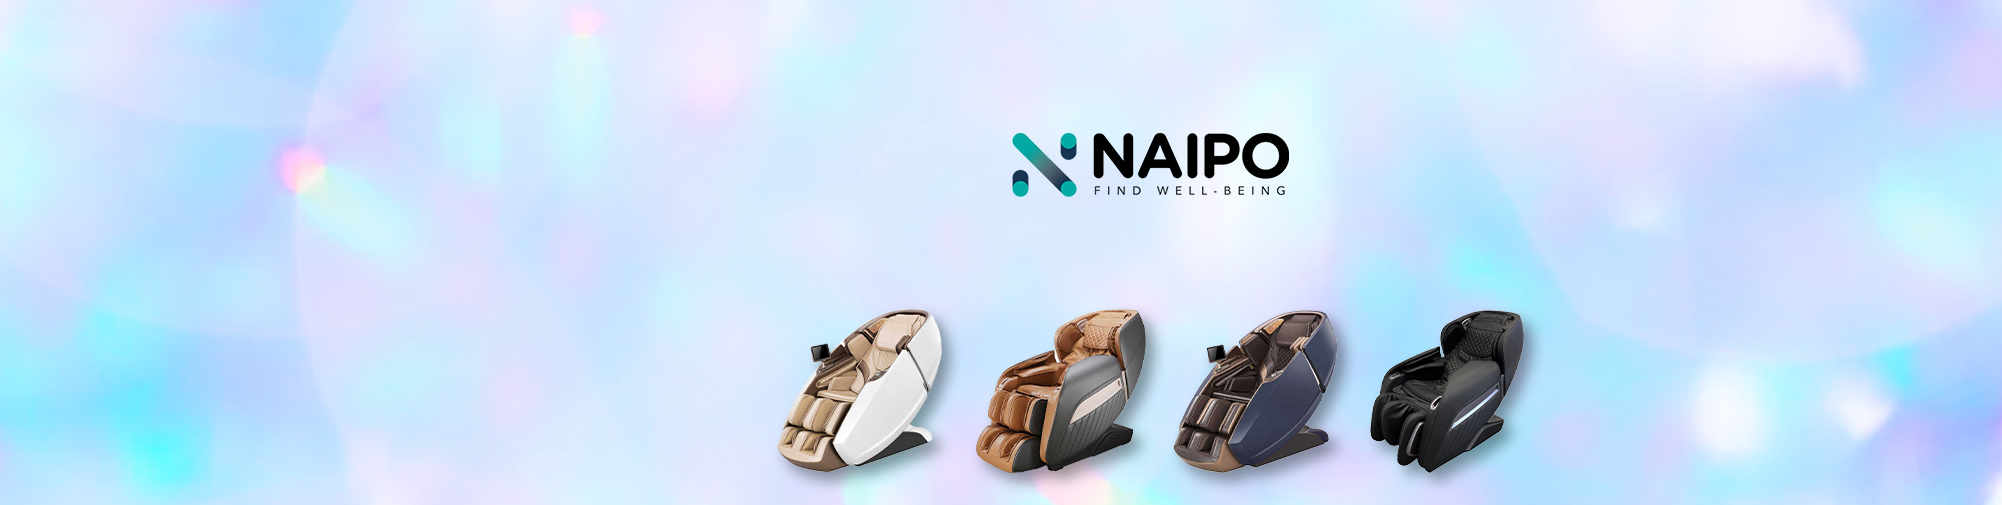 NAIPO – Masážní produkty pro celý svět | Masážní křeslo World